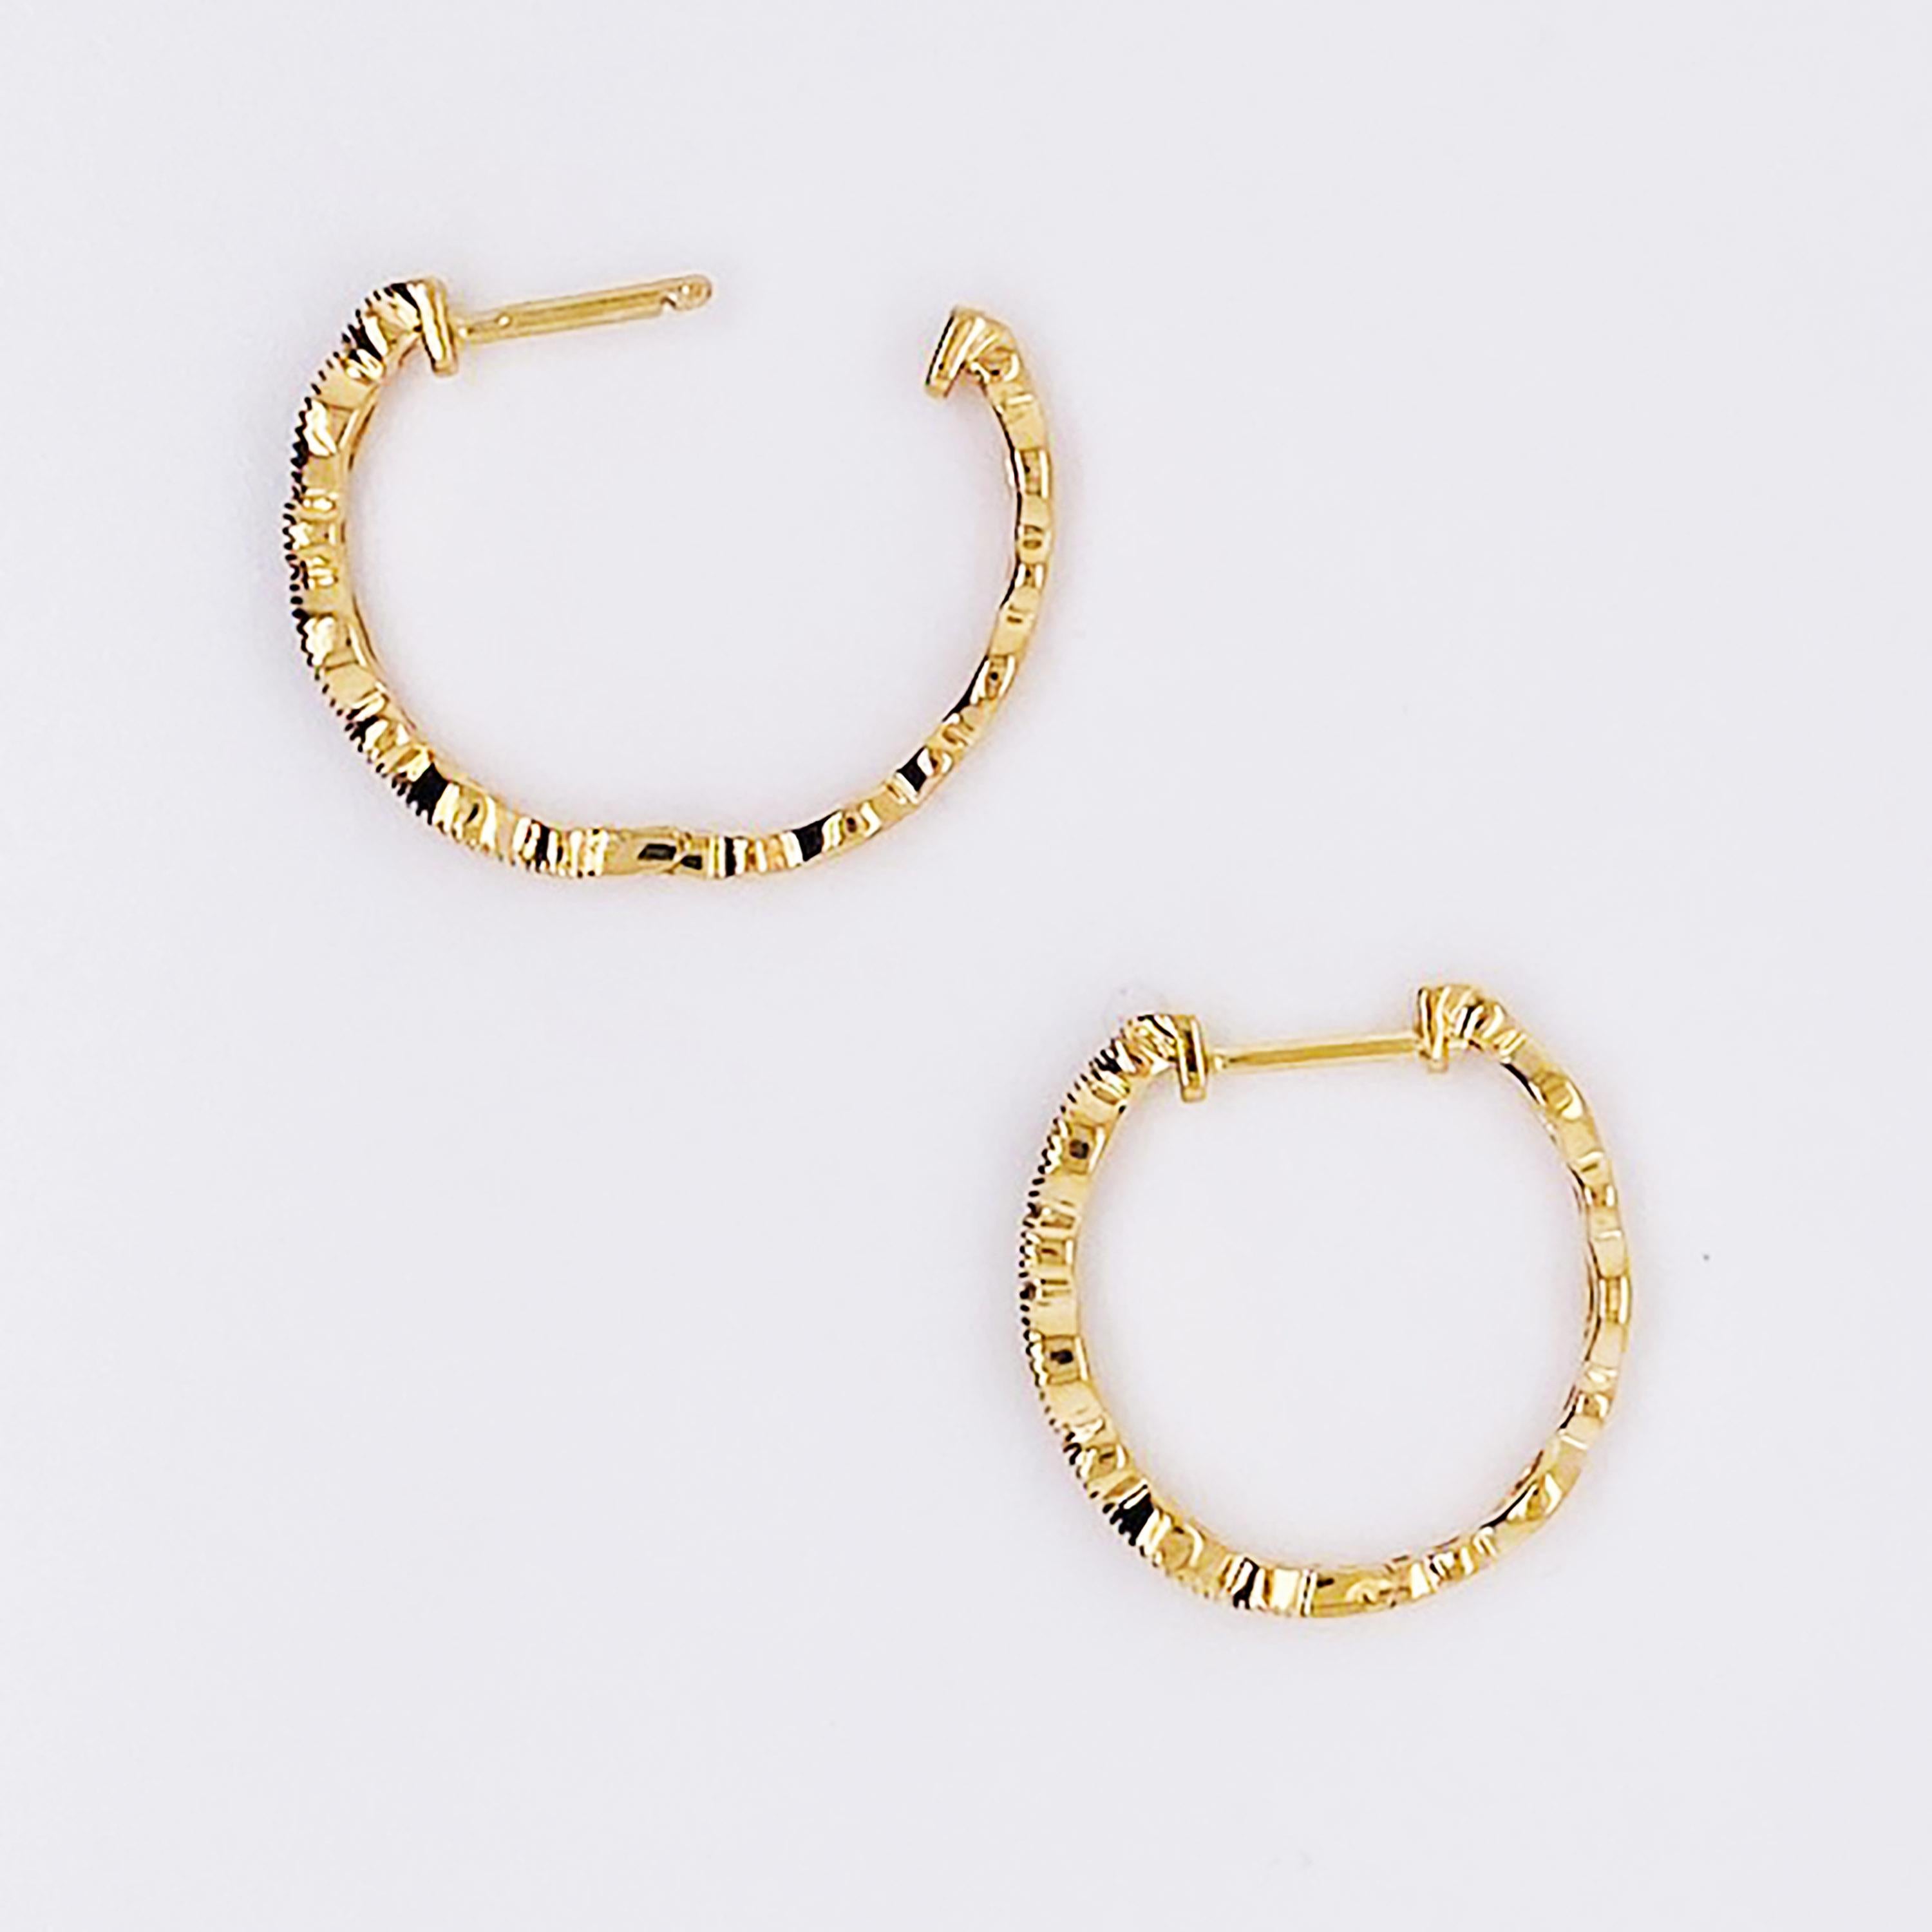 16 carat gold earrings